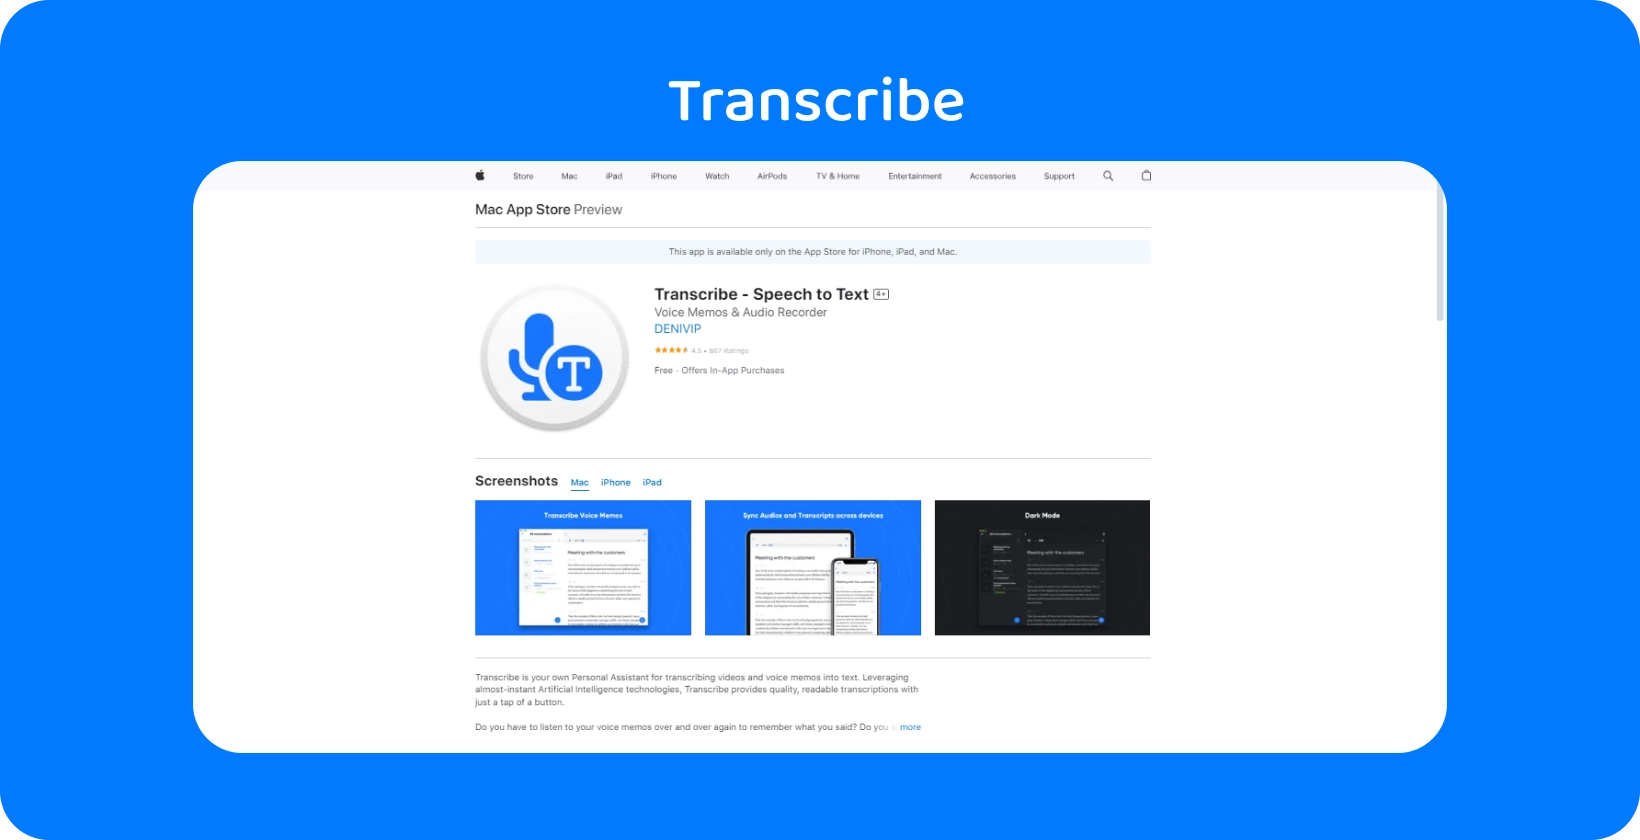 Captura de tela do aplicativo Transcribe no Mac App Store, destacando seus recursos de fala para texto.